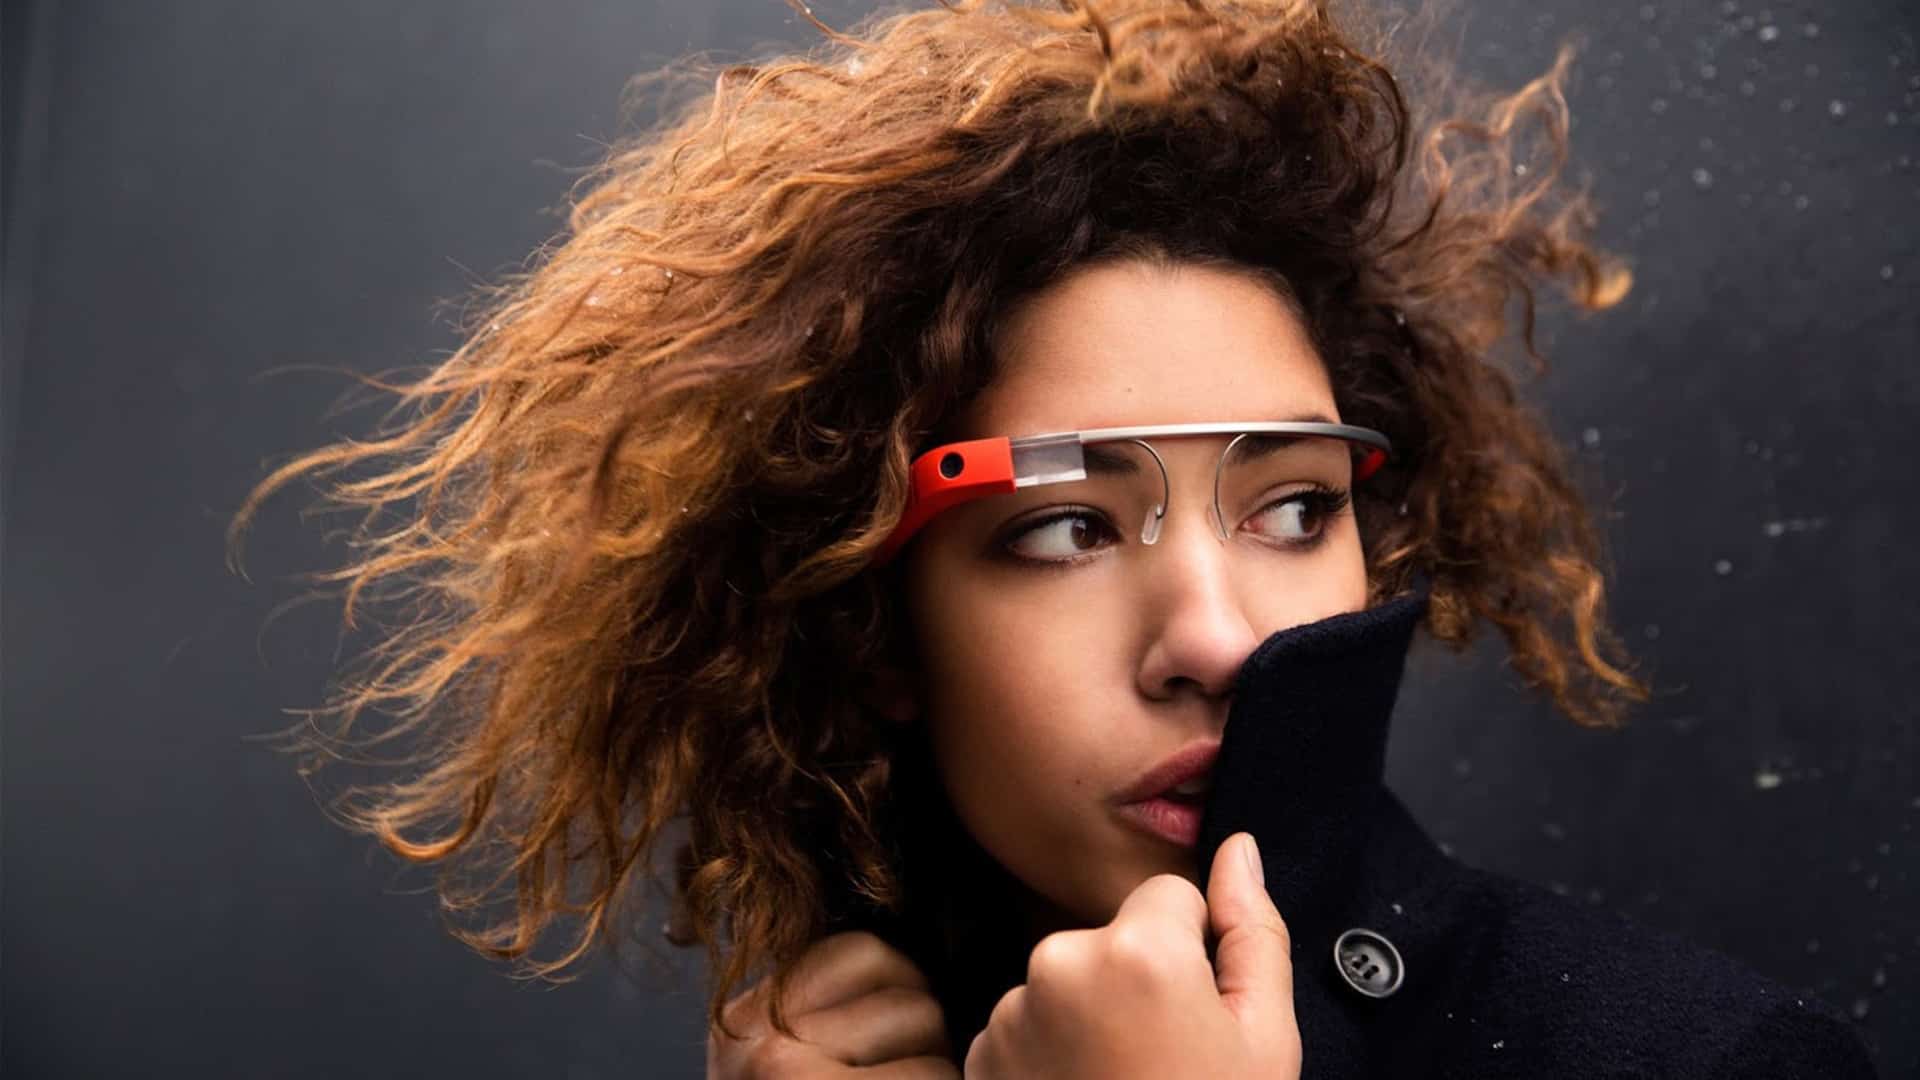 Oficial: Google Glass terá câmera de 5 Megapixels e som transmitido pelos ossos 1